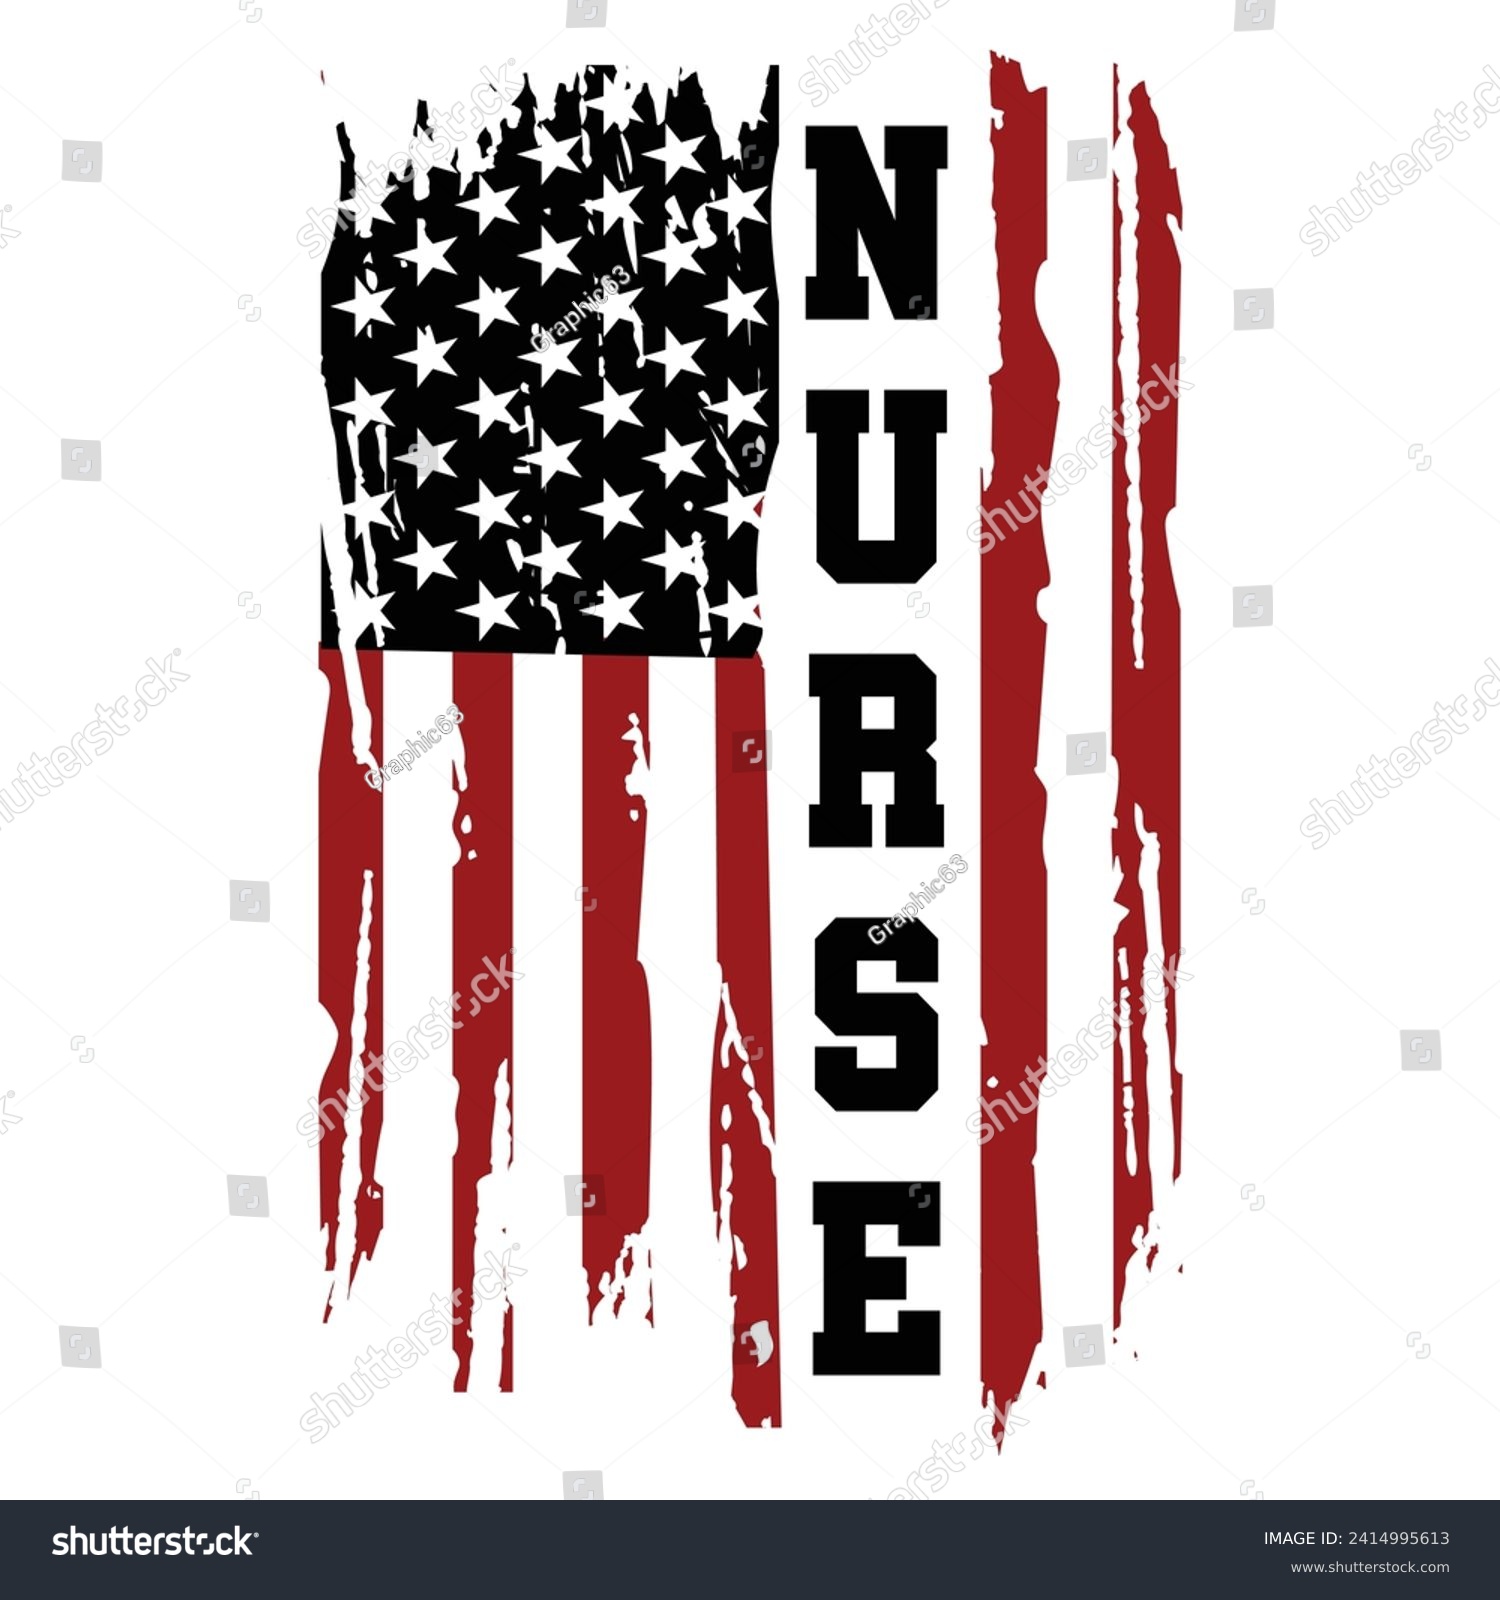 SVG of Distressed Nurse American Usa Flag Design For T Shirt Poster Banner Backround Print Vector Eps Illustrations. svg